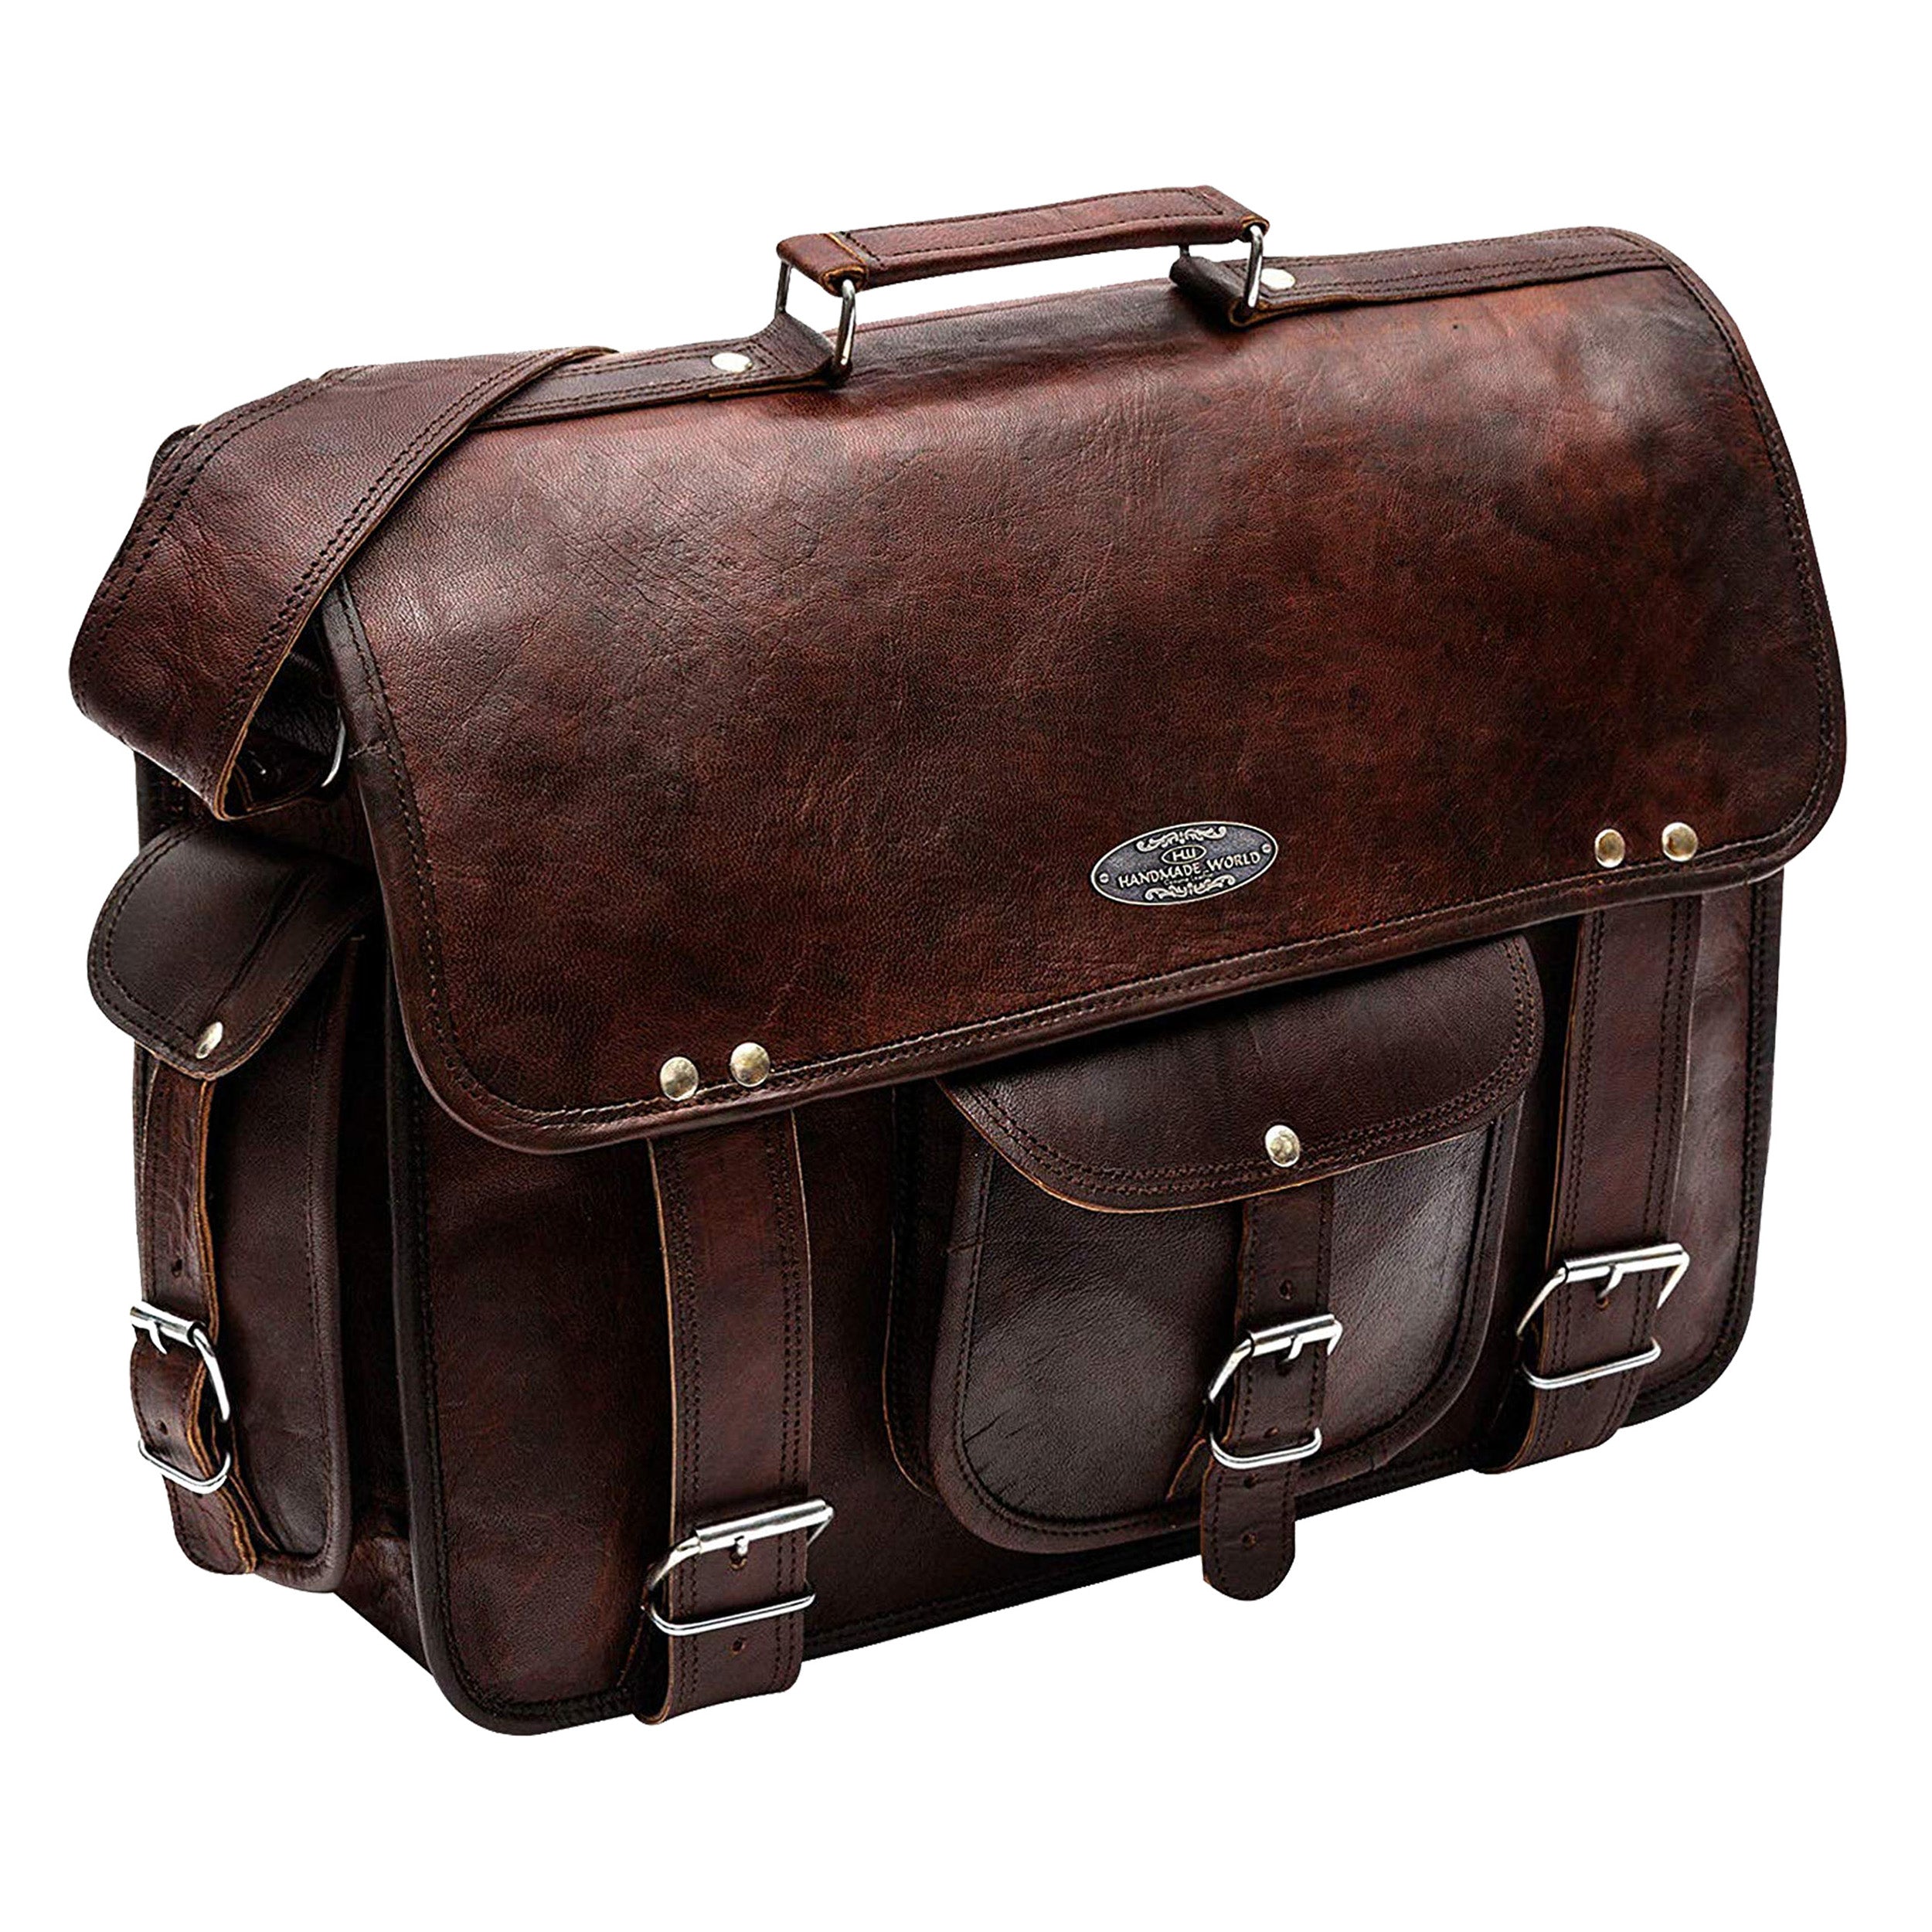 The Retro Vintage Leather Messenger Bag | Leather Handbag For Men